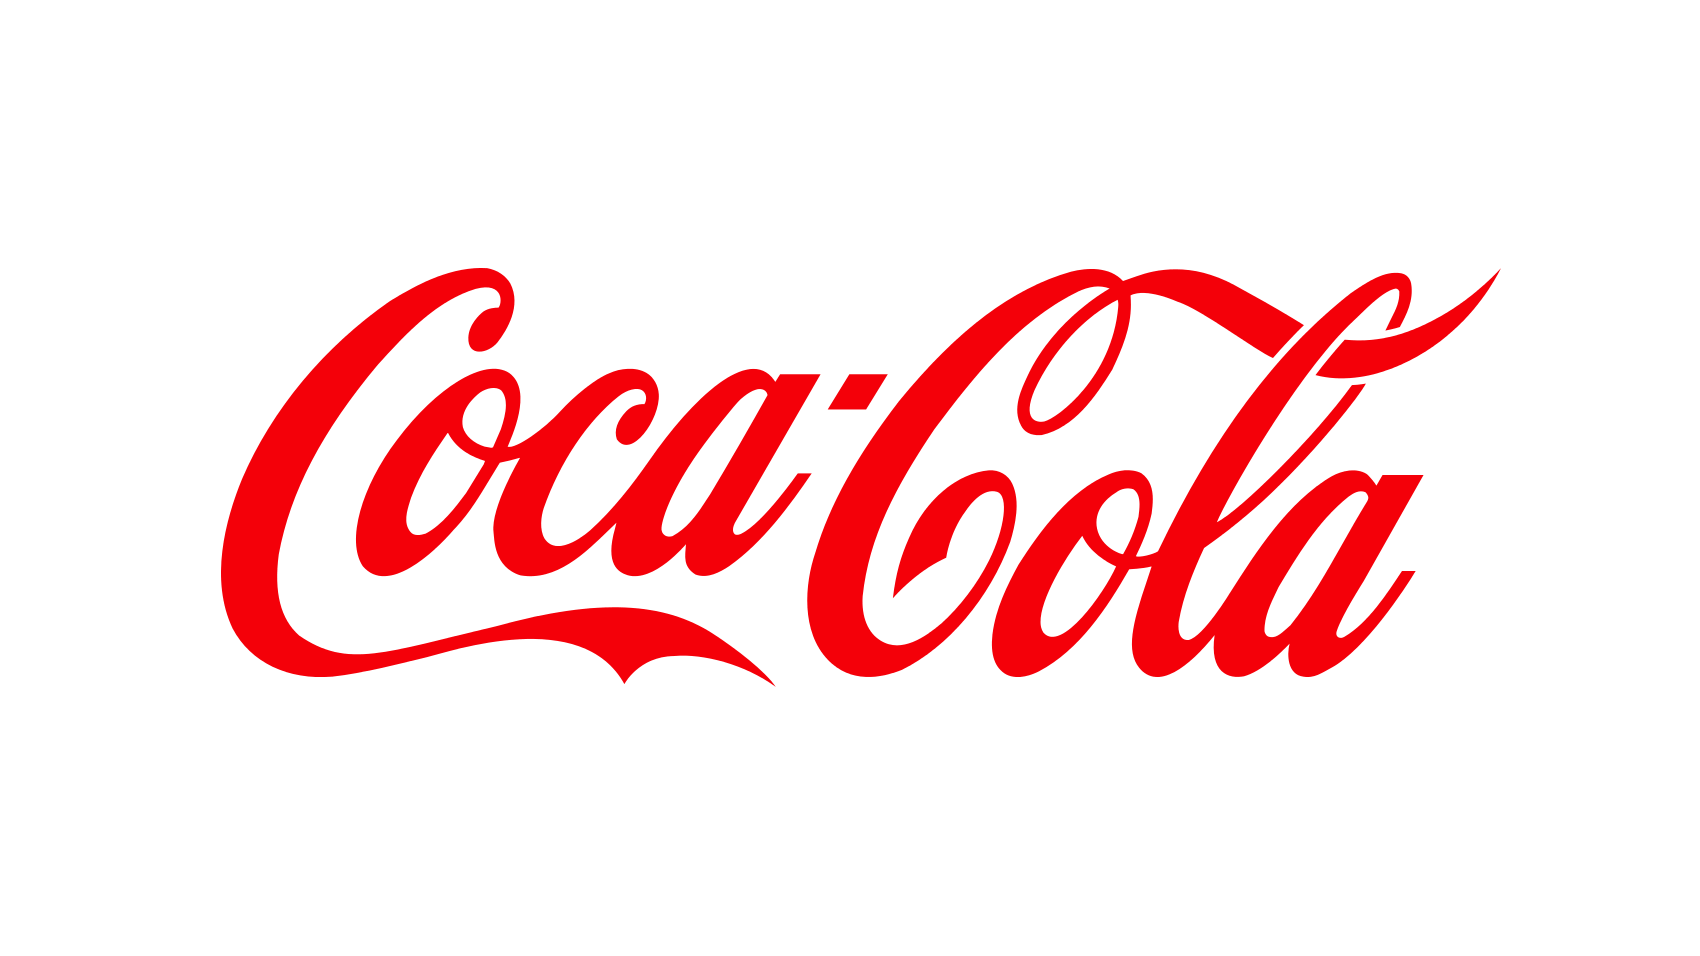 [CITYPNG.COM]HD Official Coca Cola Company Logo PNG - 1700x956.png